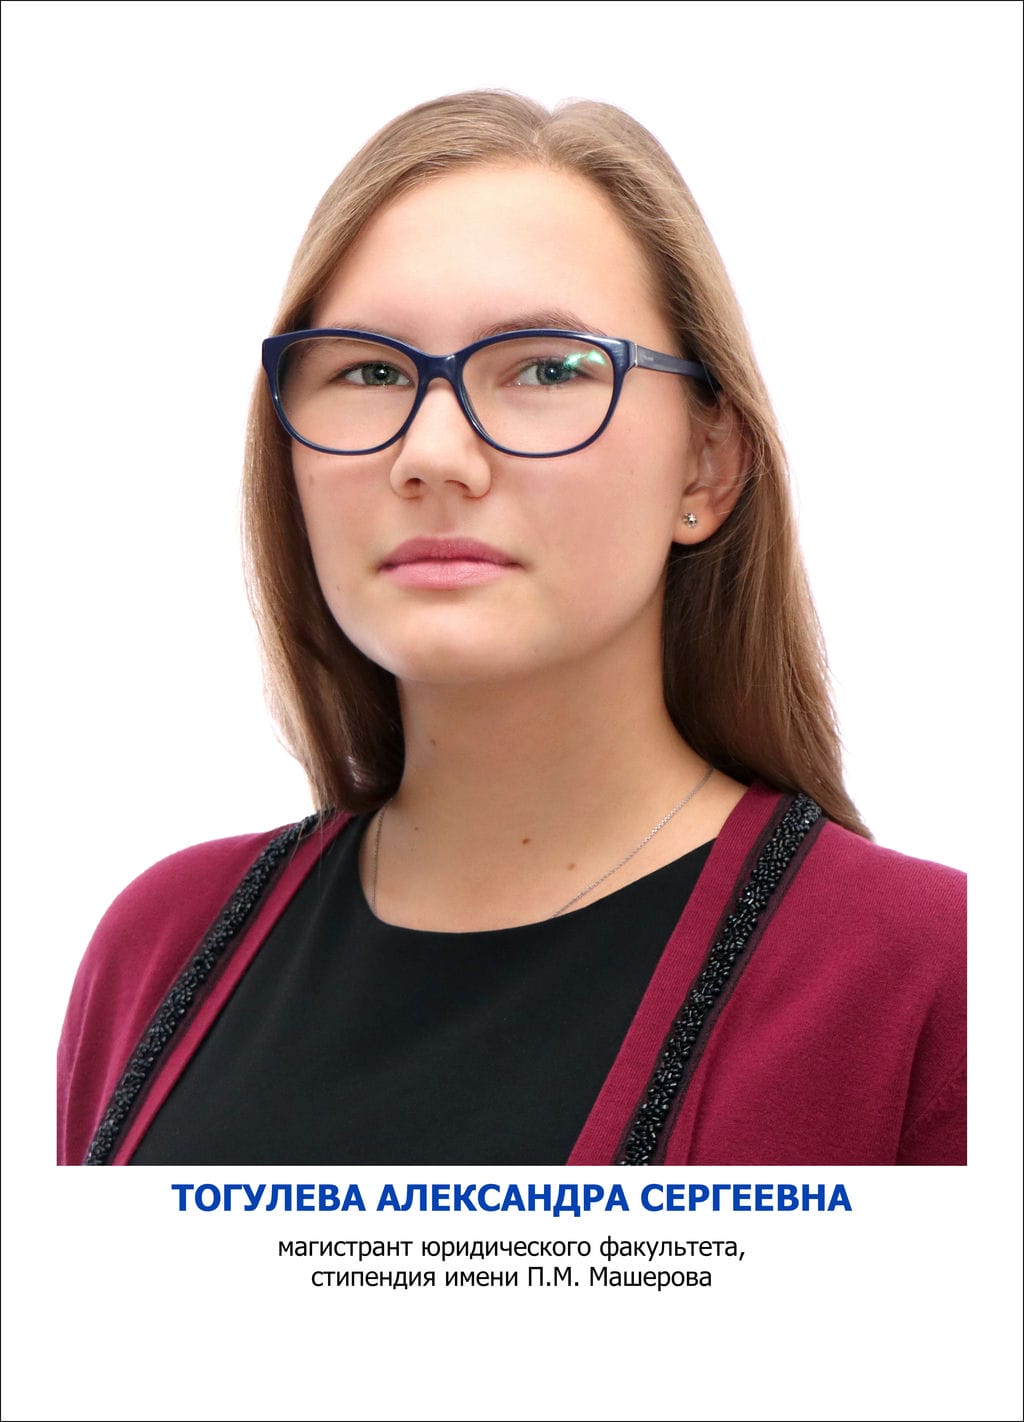 Тогулева Александра Сергеевна